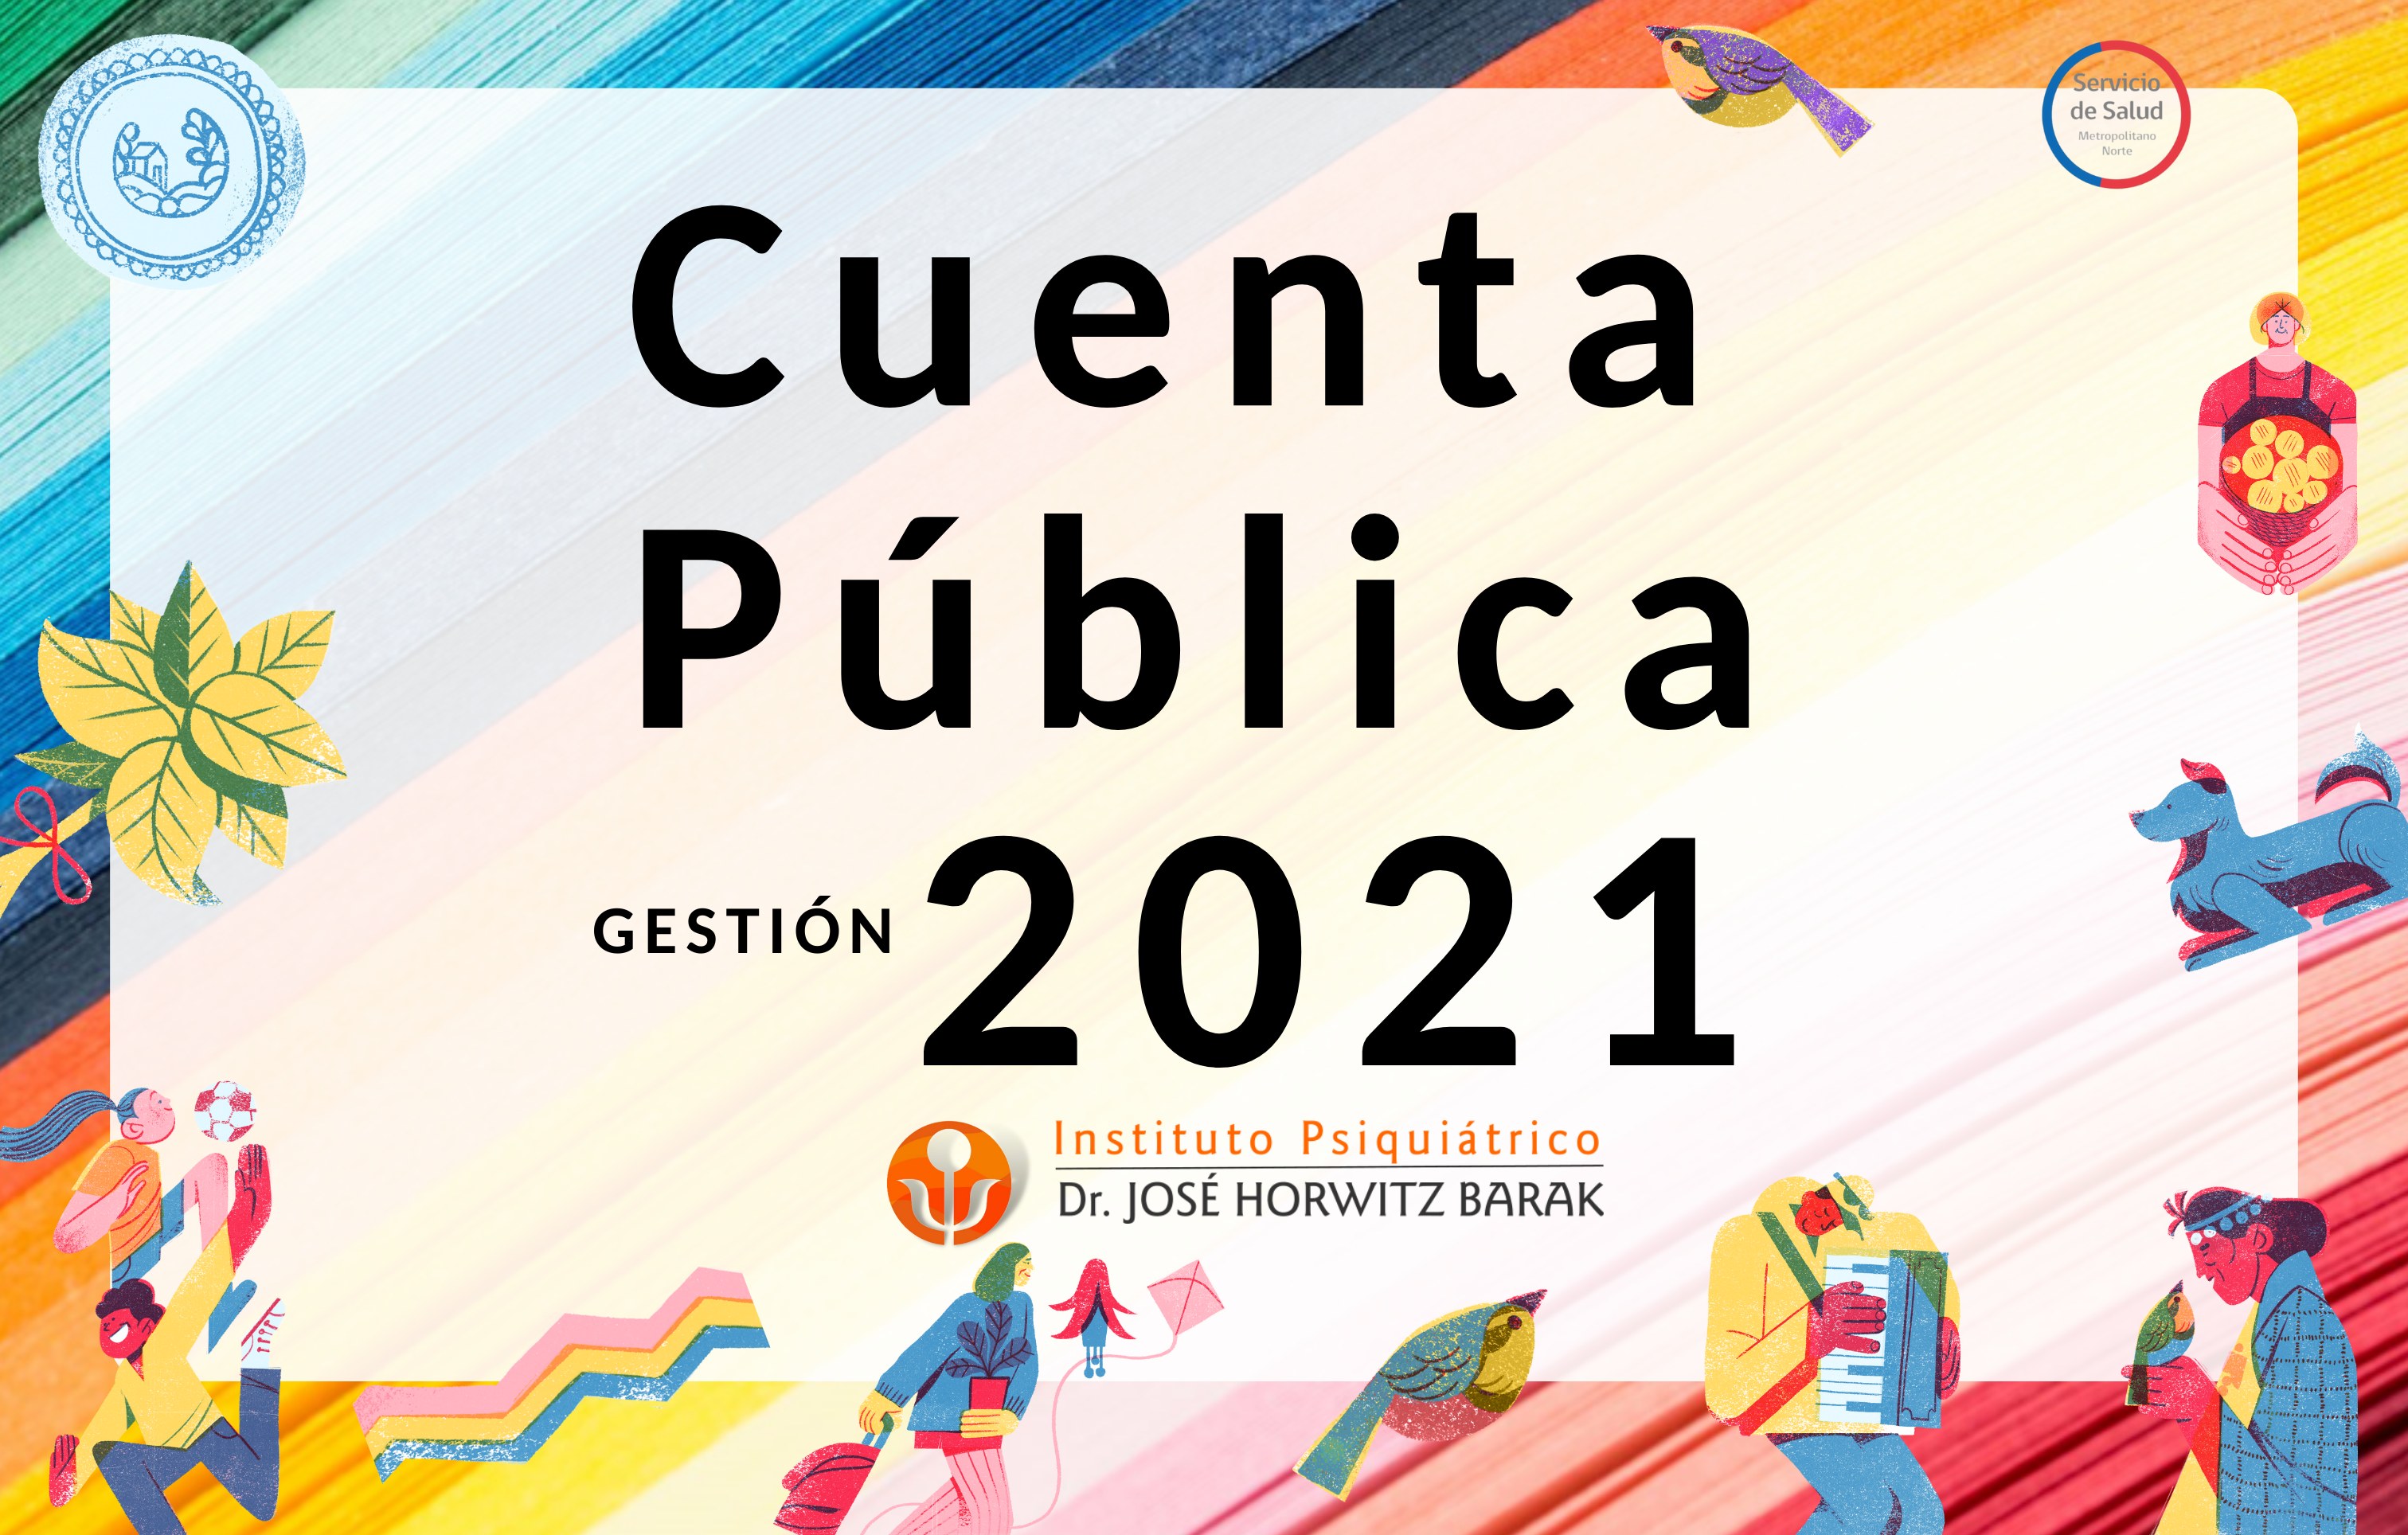 Importantes logros y Desafíos marcan Cuenta Pública Gestión 2021 del Instituto Psiquiátrico